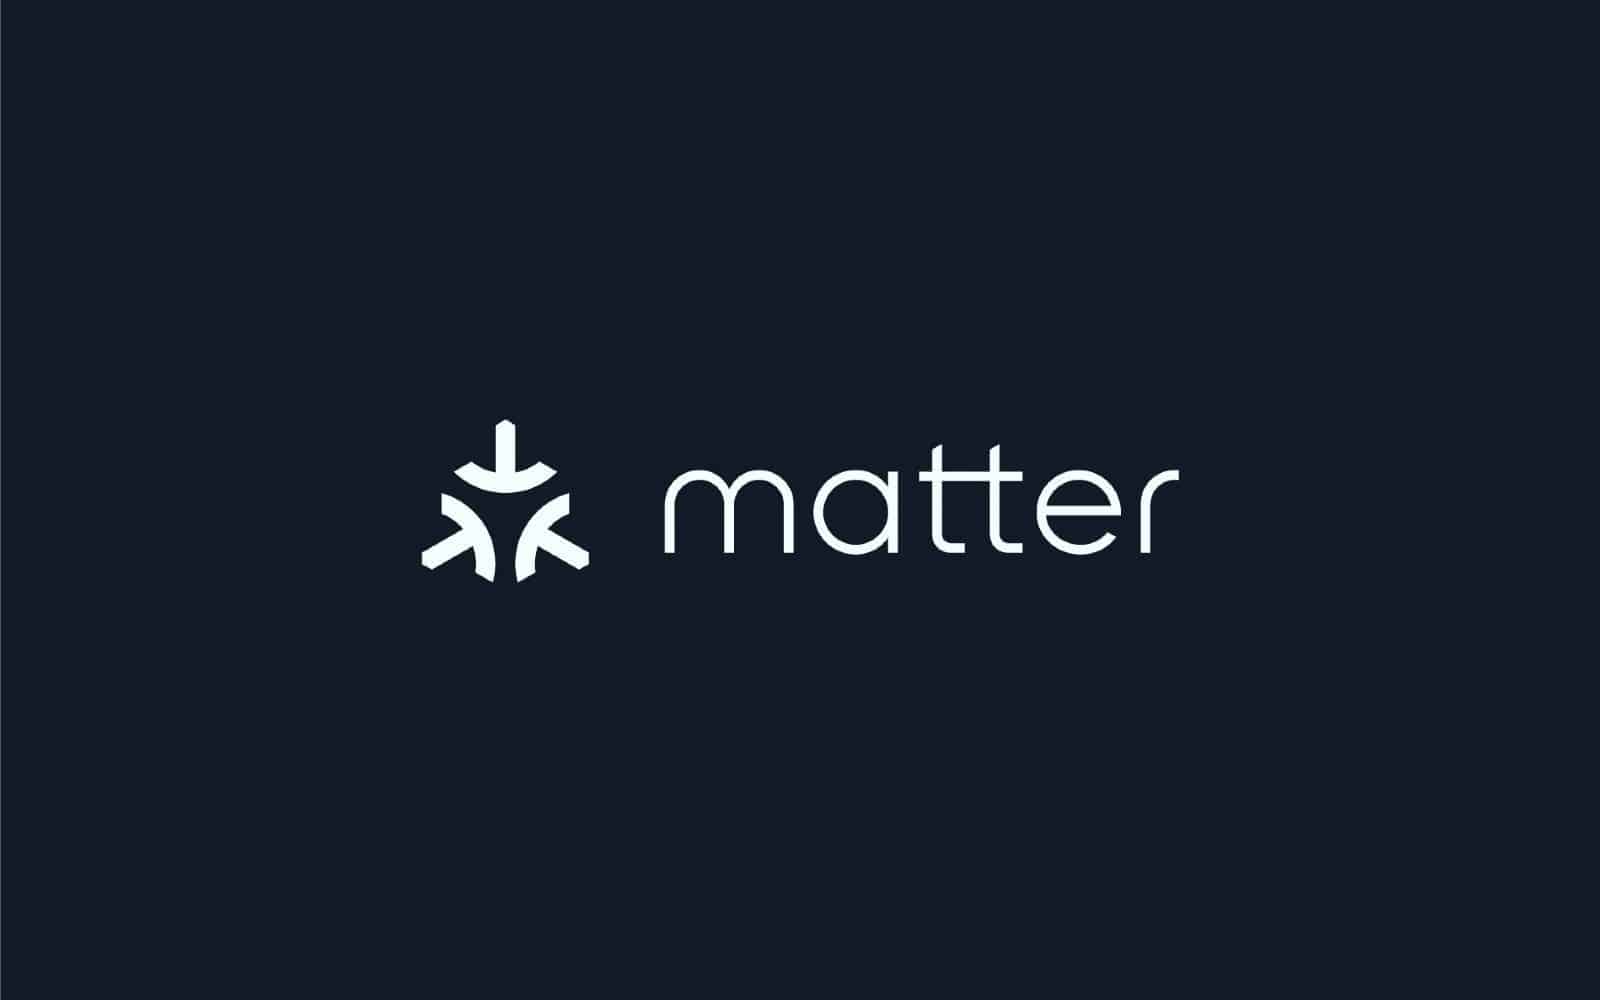 "Matter" standard